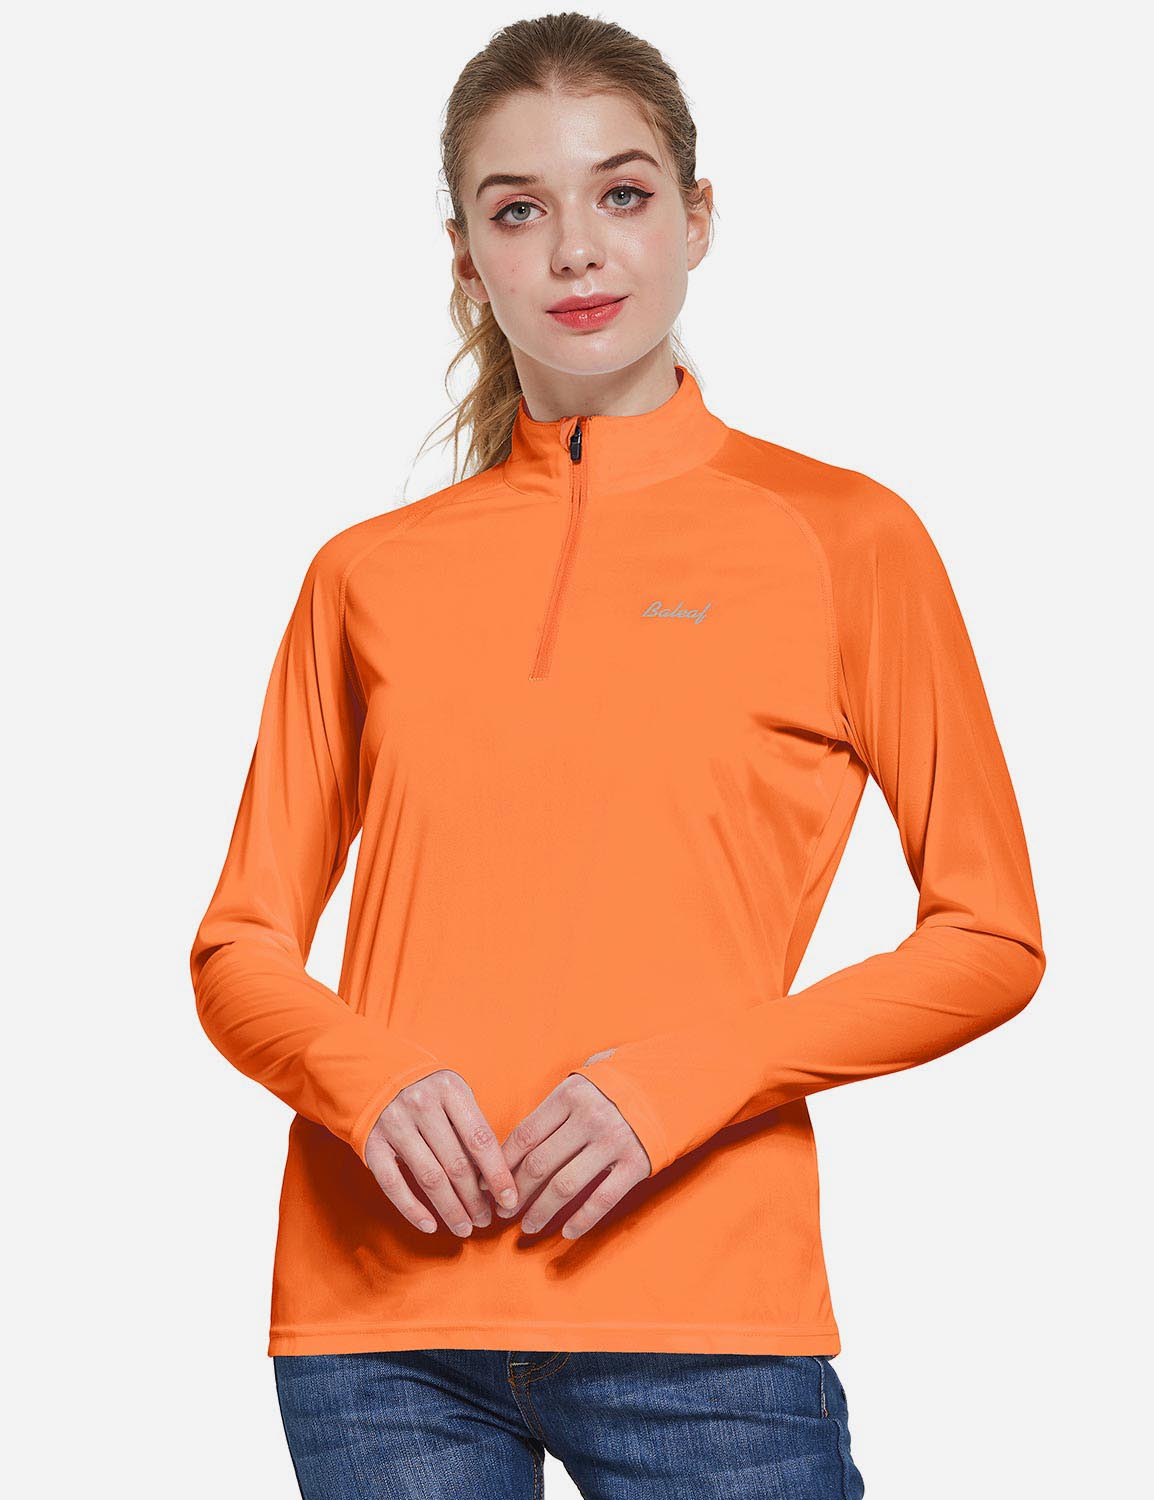 Baleaf Women's UP50+ Collared Long Sleeved Tshirt w Thumbholes aga065 Orange Front